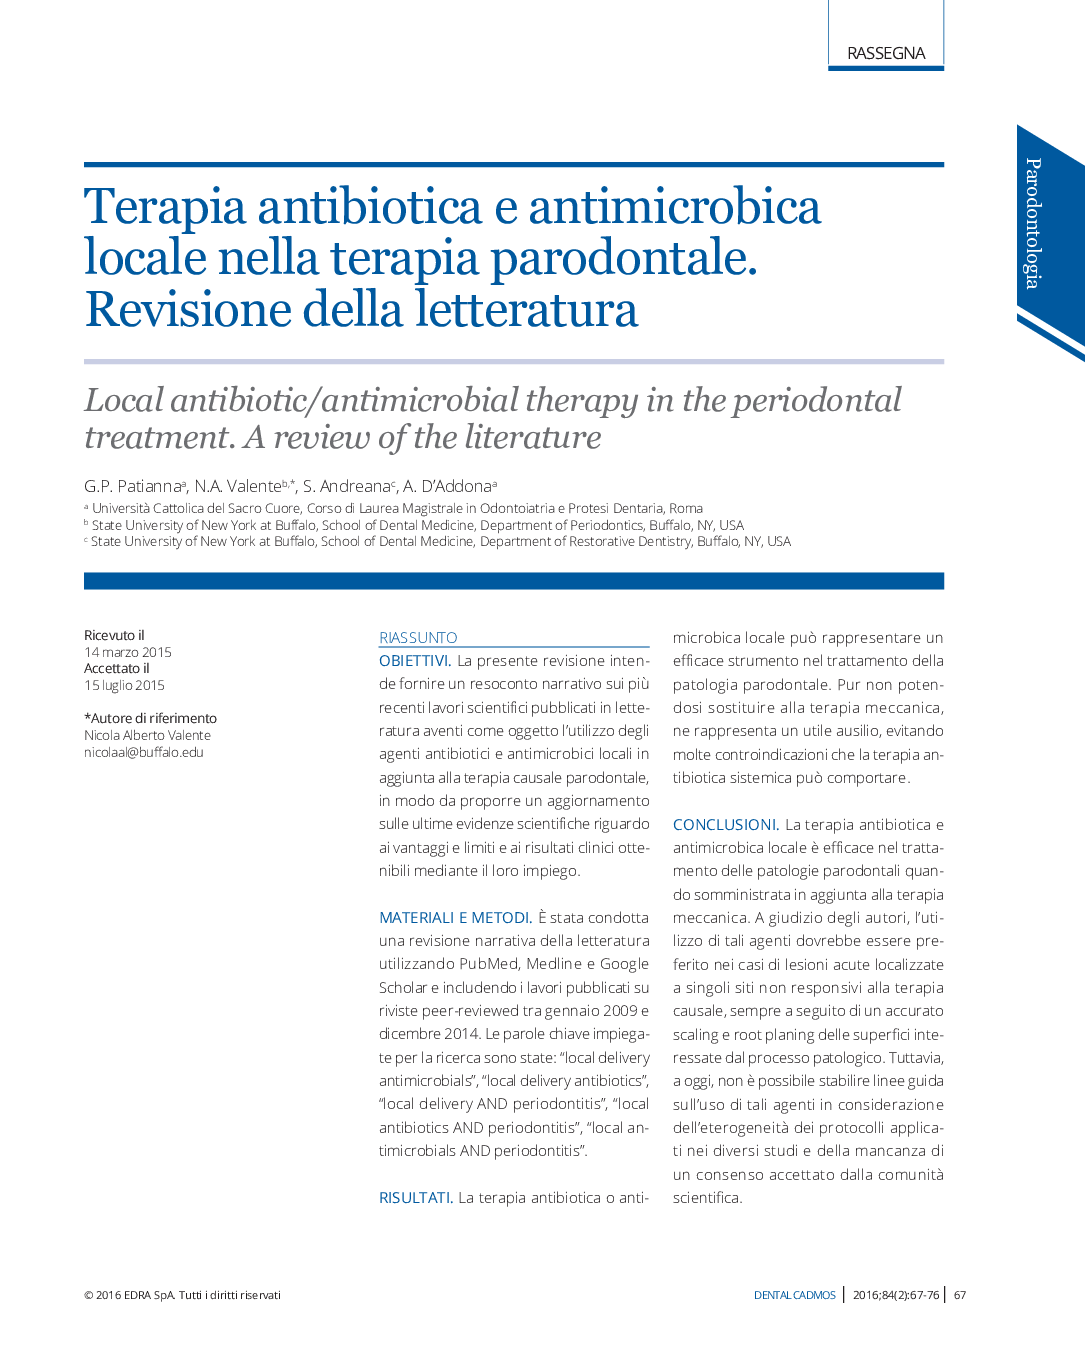 Terapia antibiotica e antimicrobica locale nella terapia parodontale. Revisione della letteratura